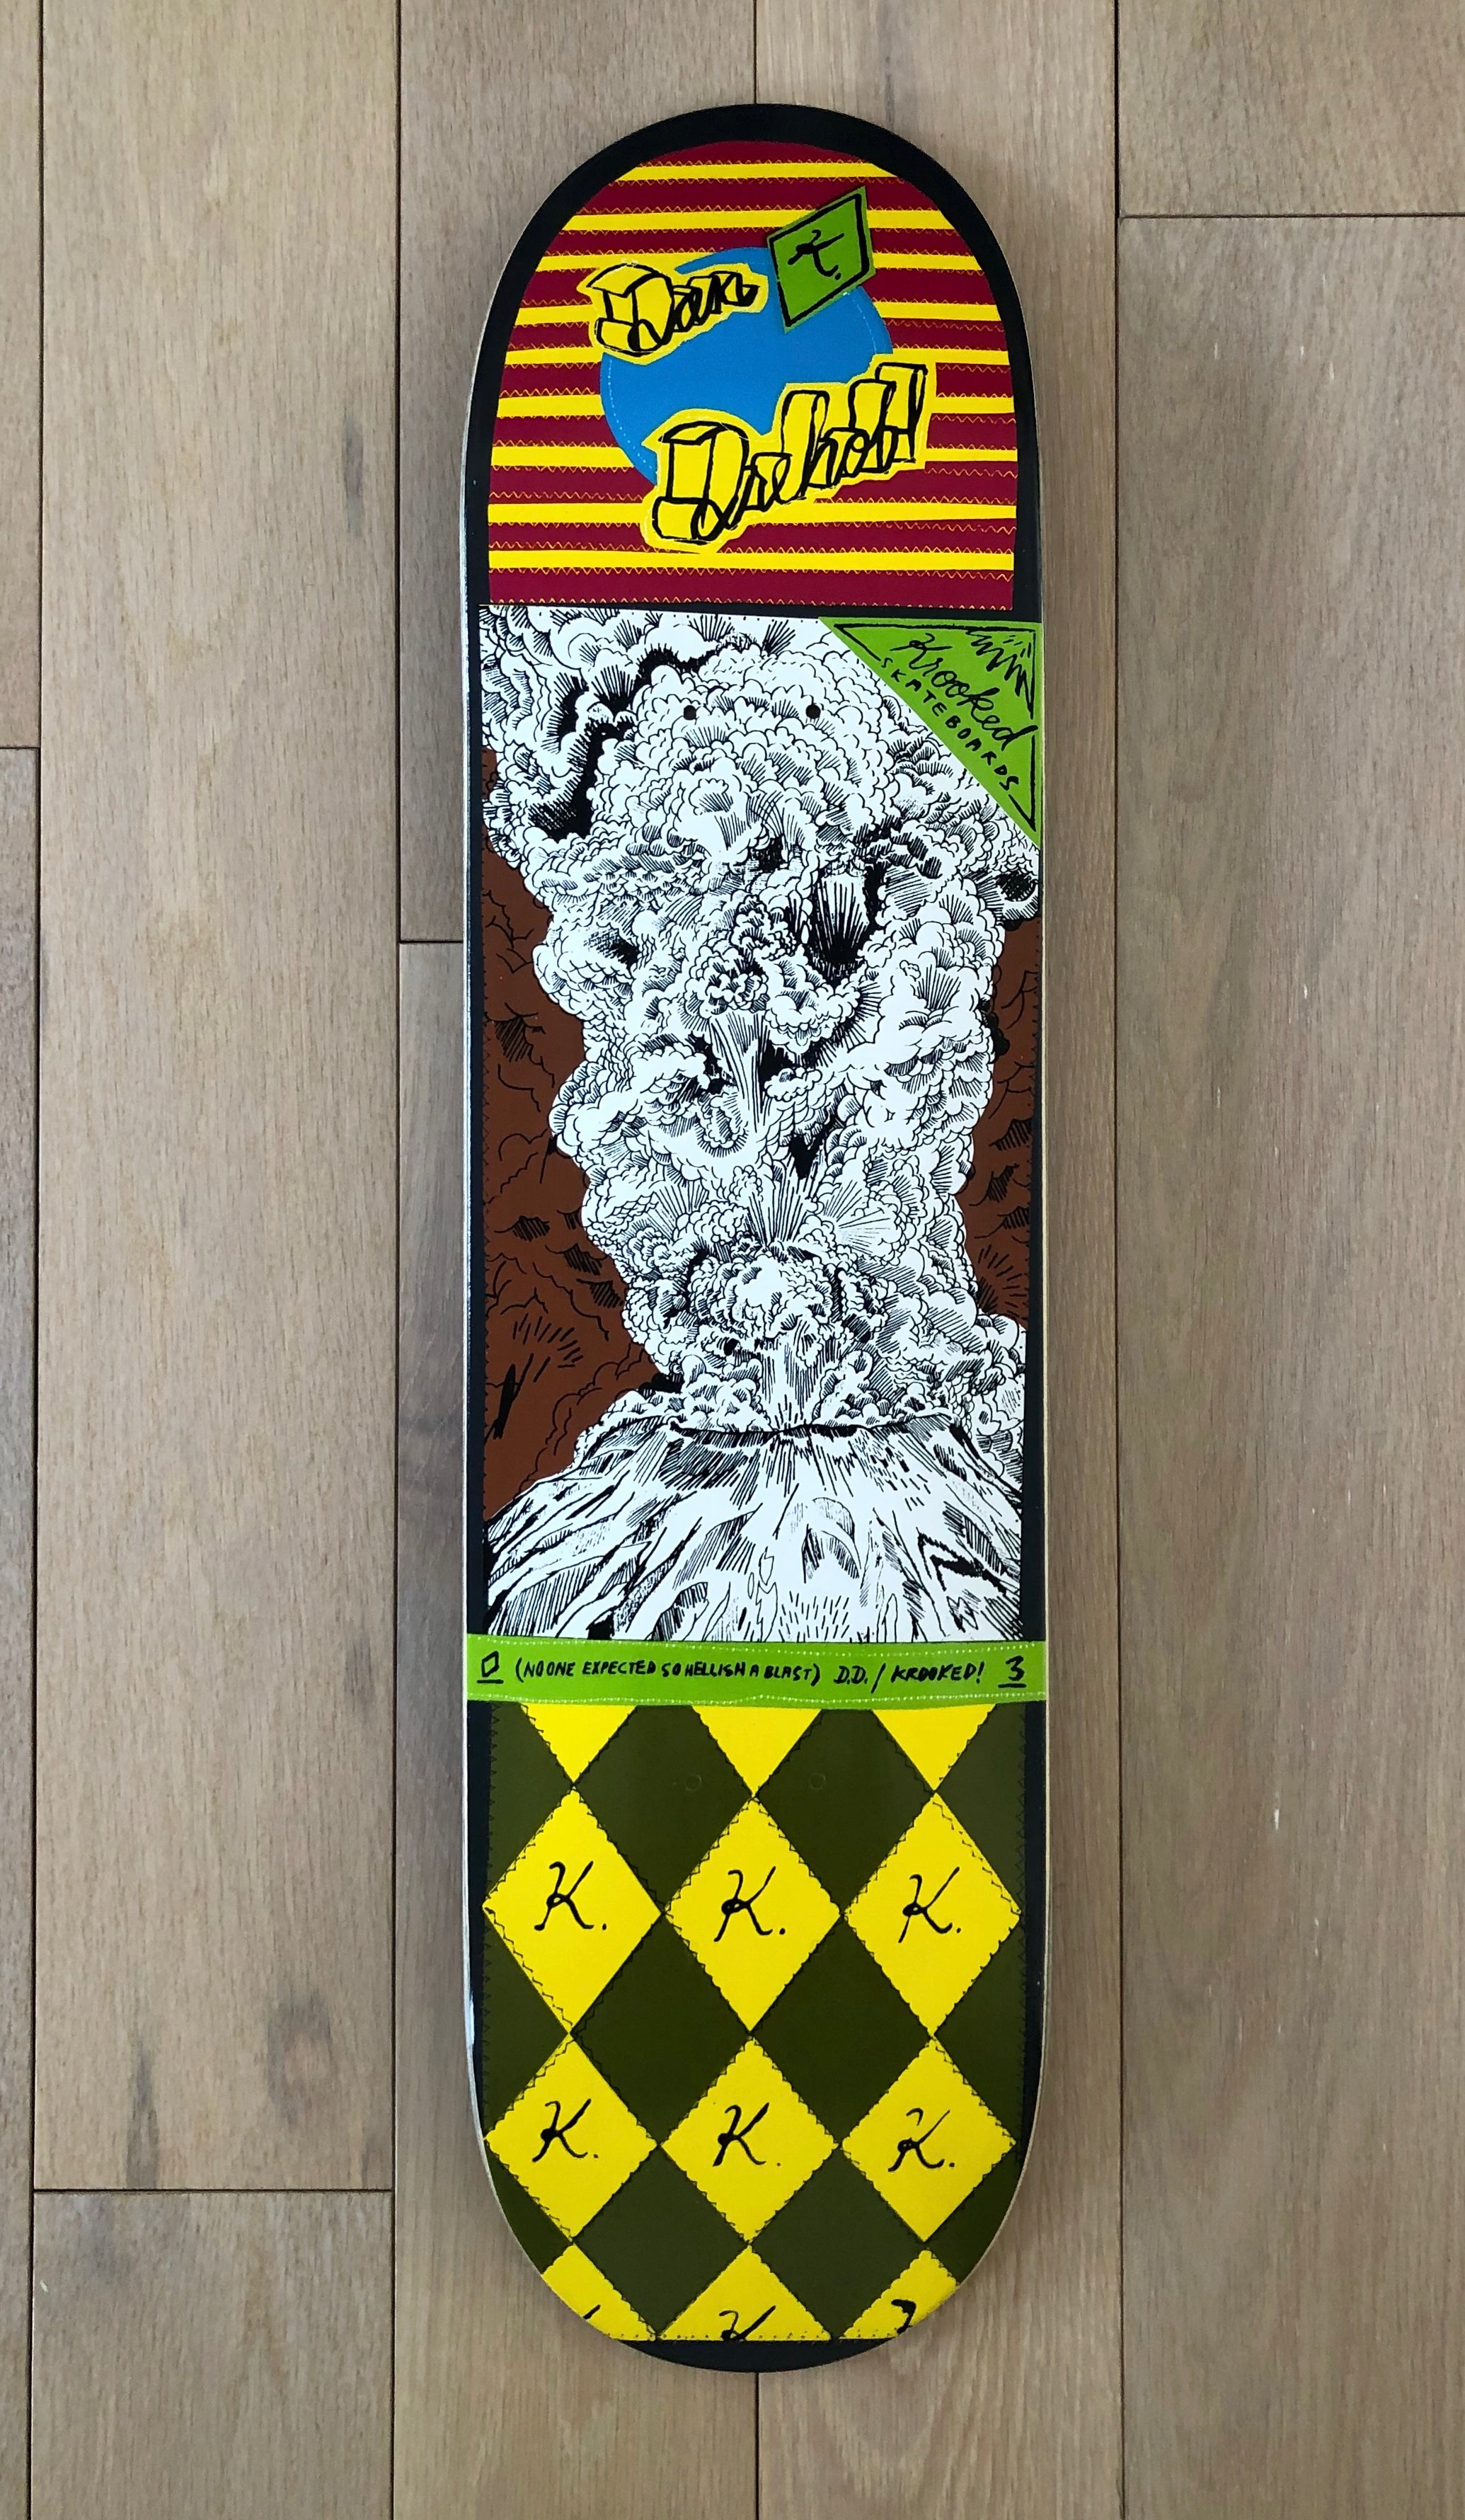 Mark Gonzales x Krooked Skateboards "Dan Drehobl Volcano", 2003